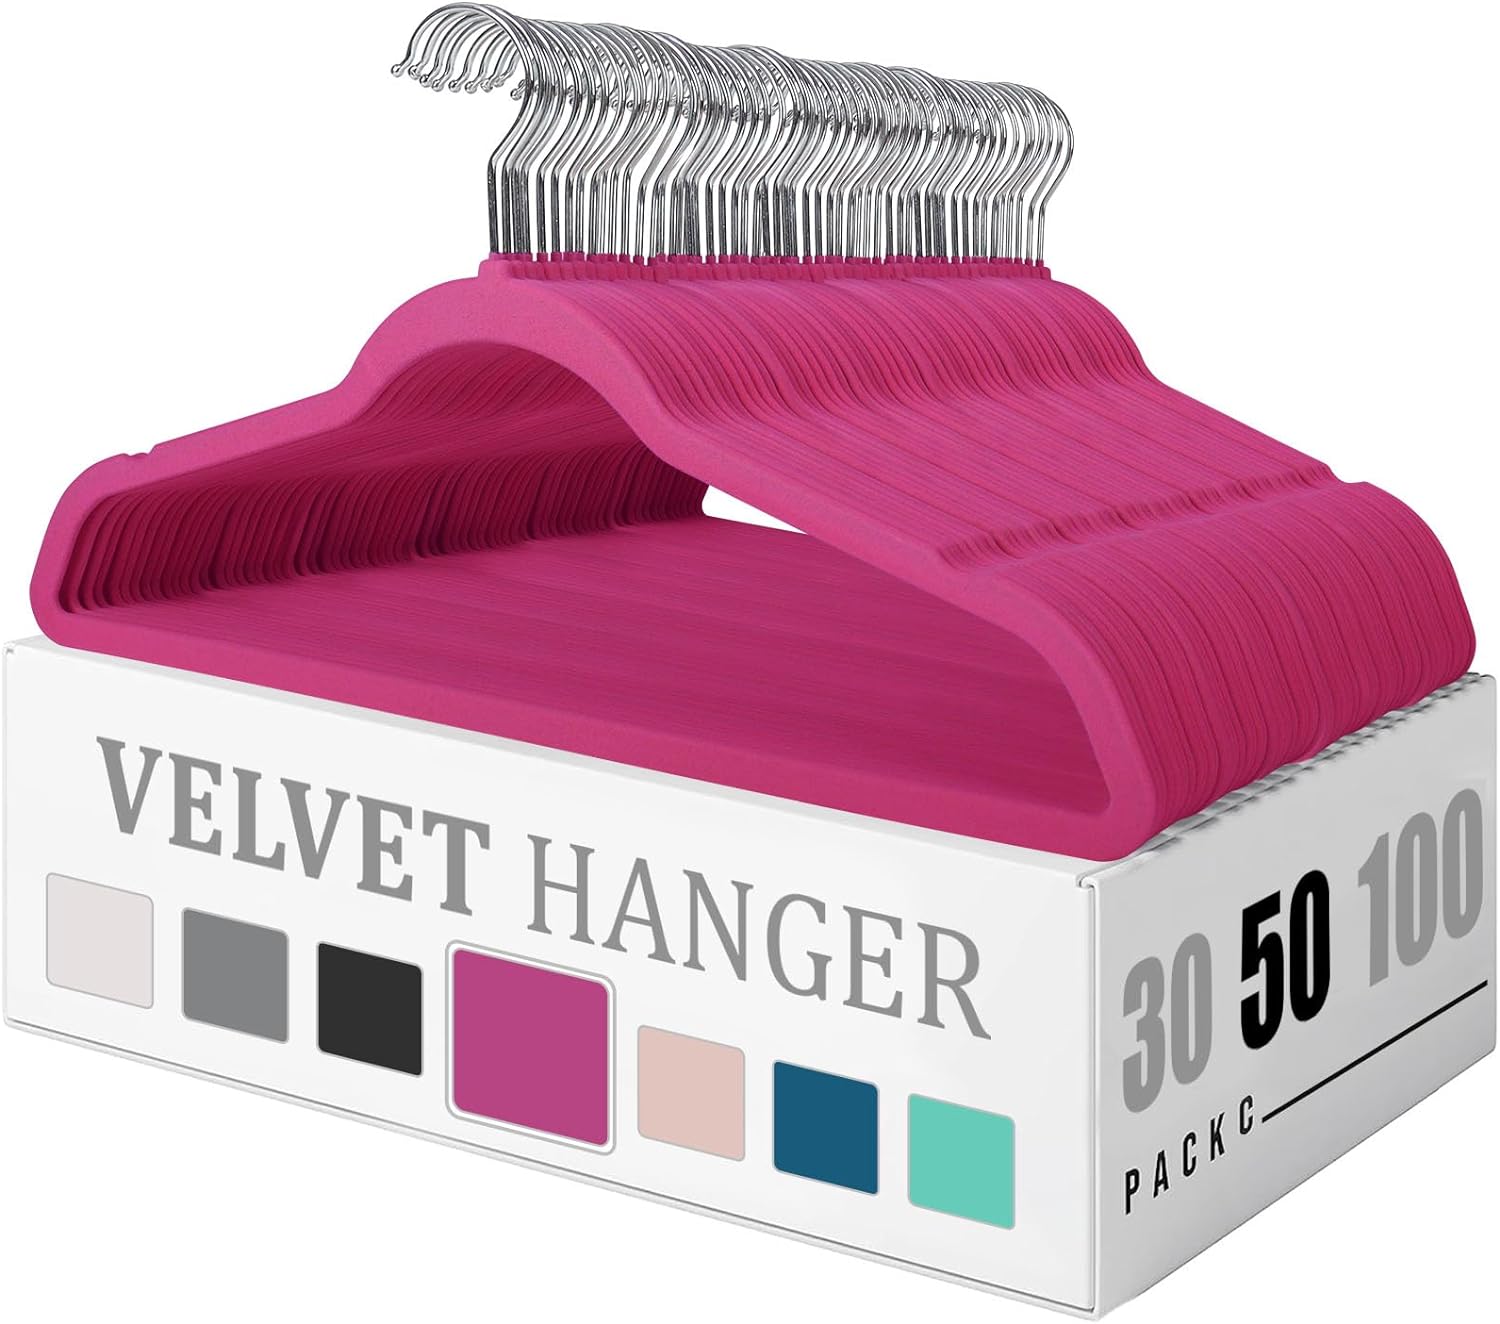 Flysums Premium Velvet Hangers 50 Pack, Heavy Duty Study Black